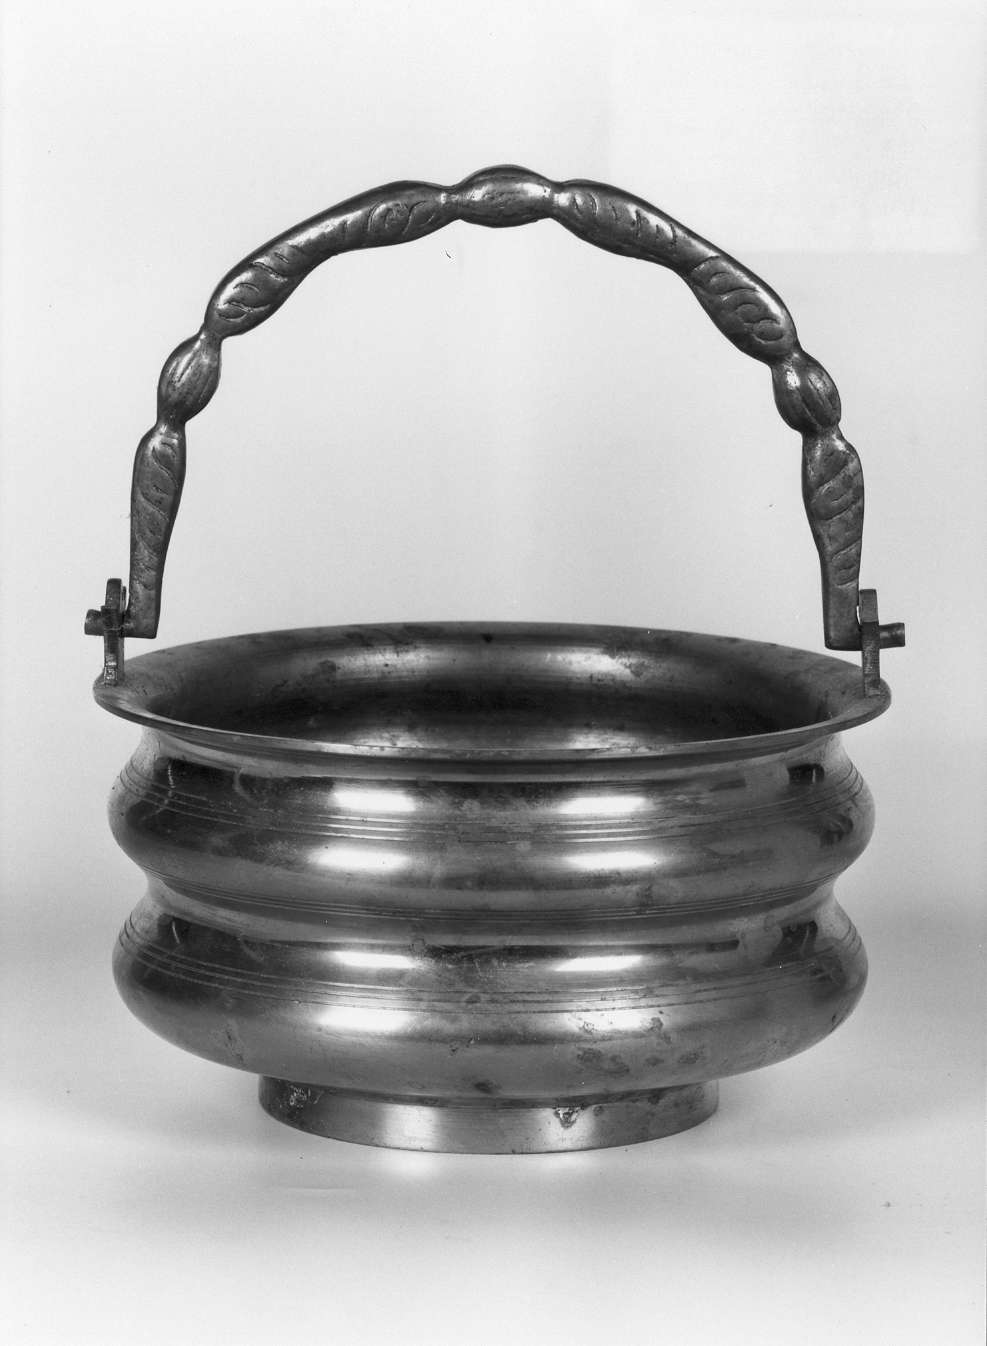 secchiello per l'acqua benedetta - manifattura emiliano-lombarda (sec. XVII)